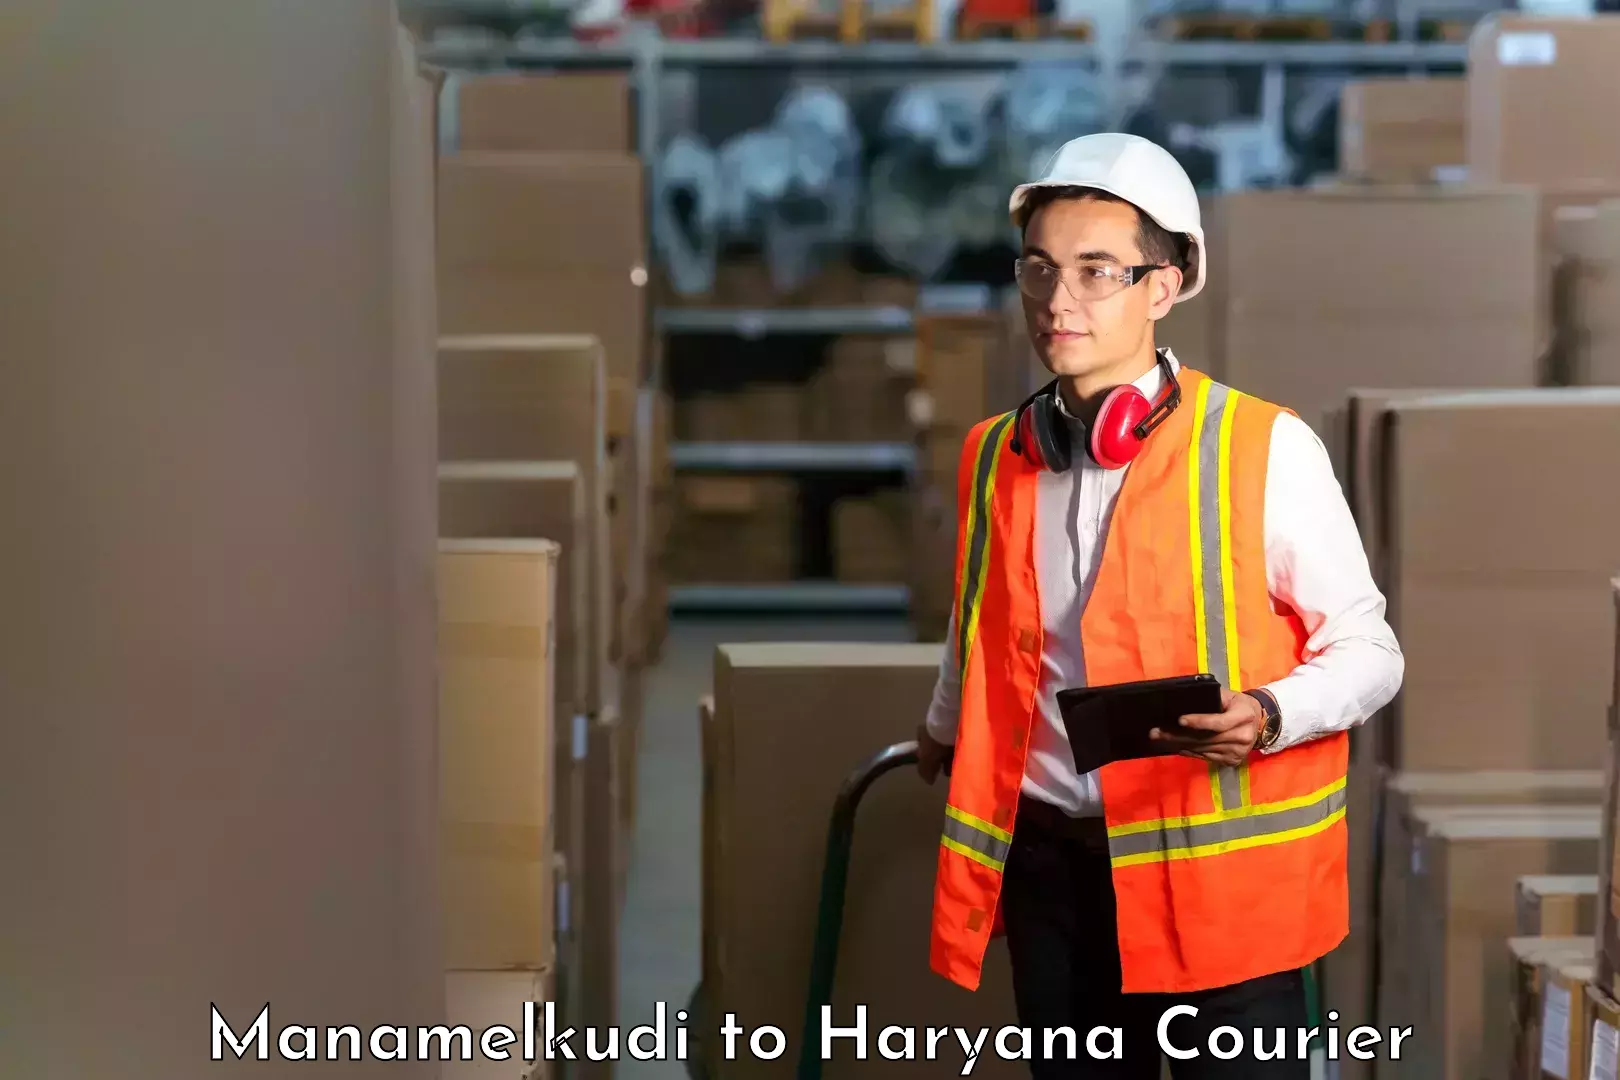 Bulk courier orders Manamelkudi to Mandi Dabwali